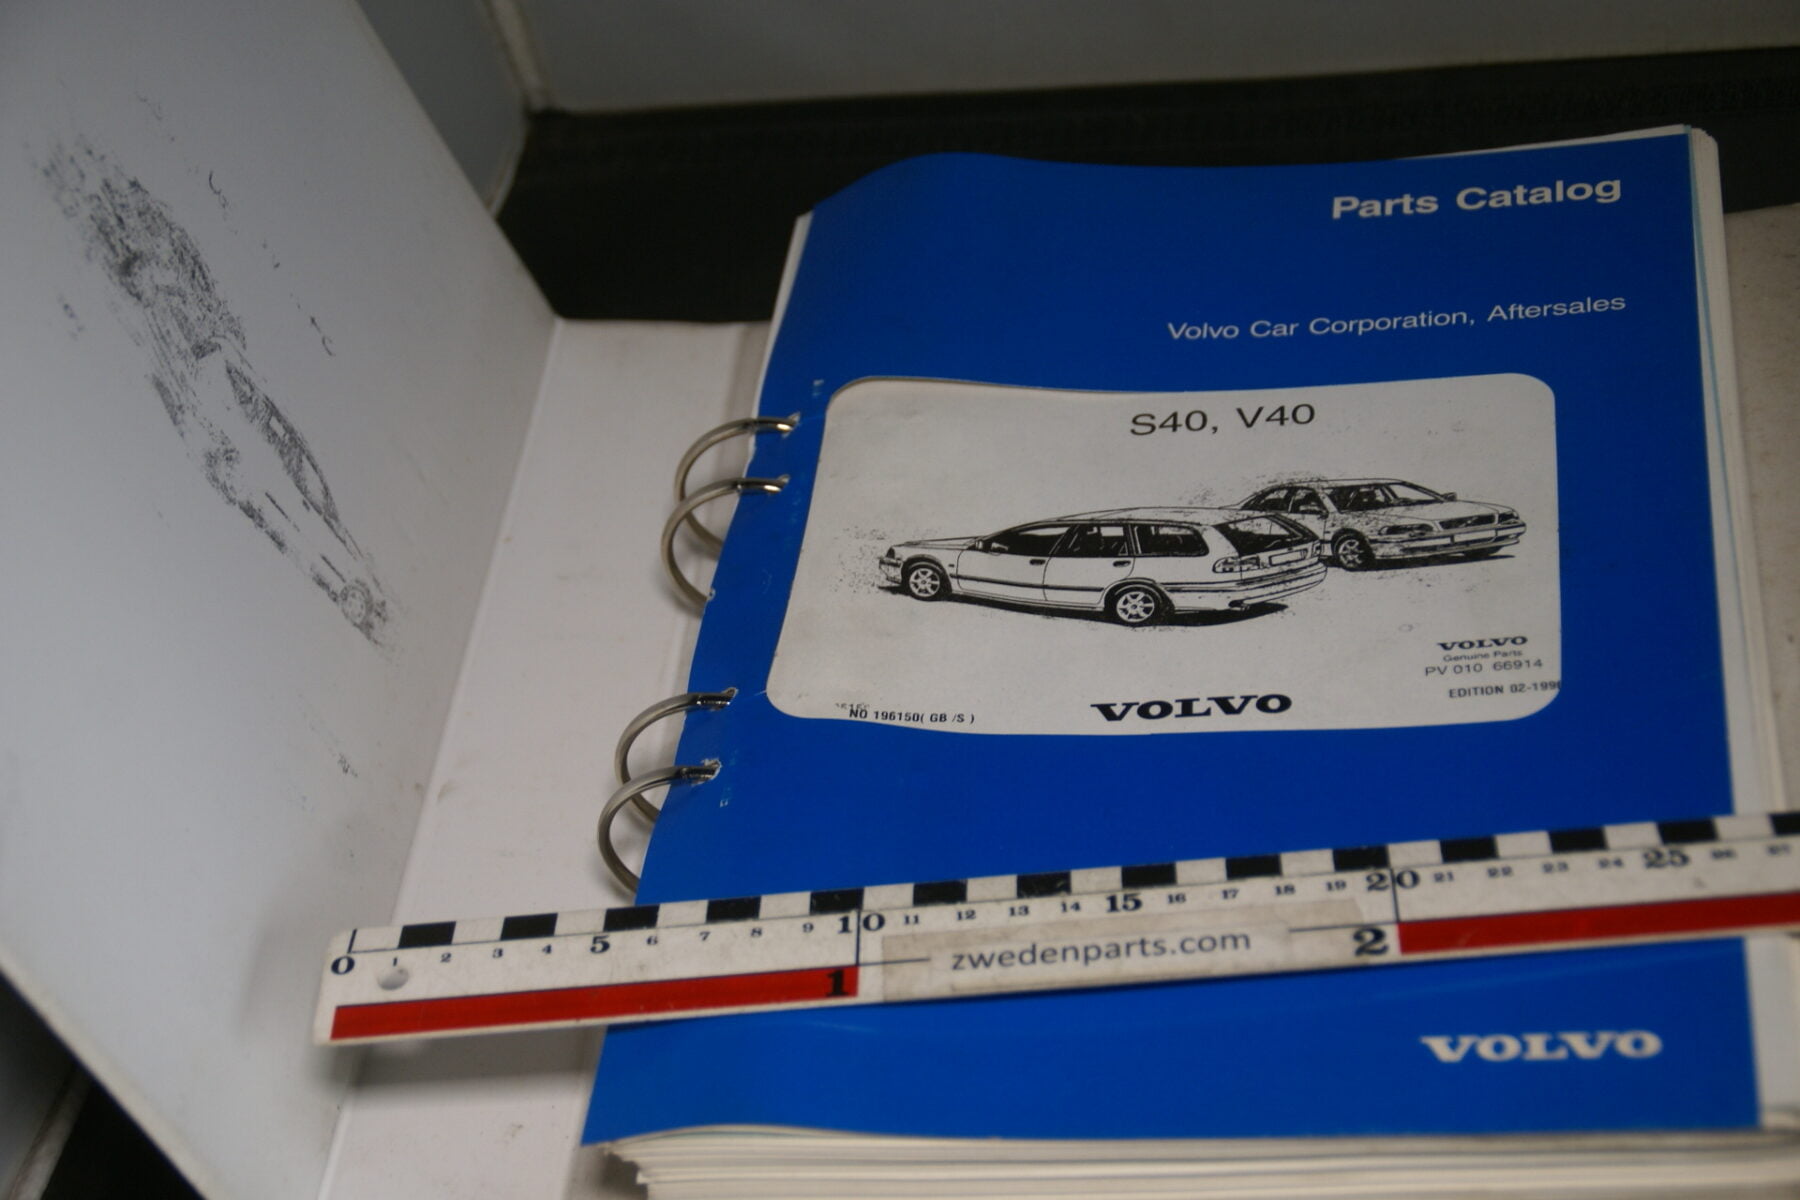 DSC09176 origineel Volvo parts catalog S40 V40, nr 196150 English, Svenskt